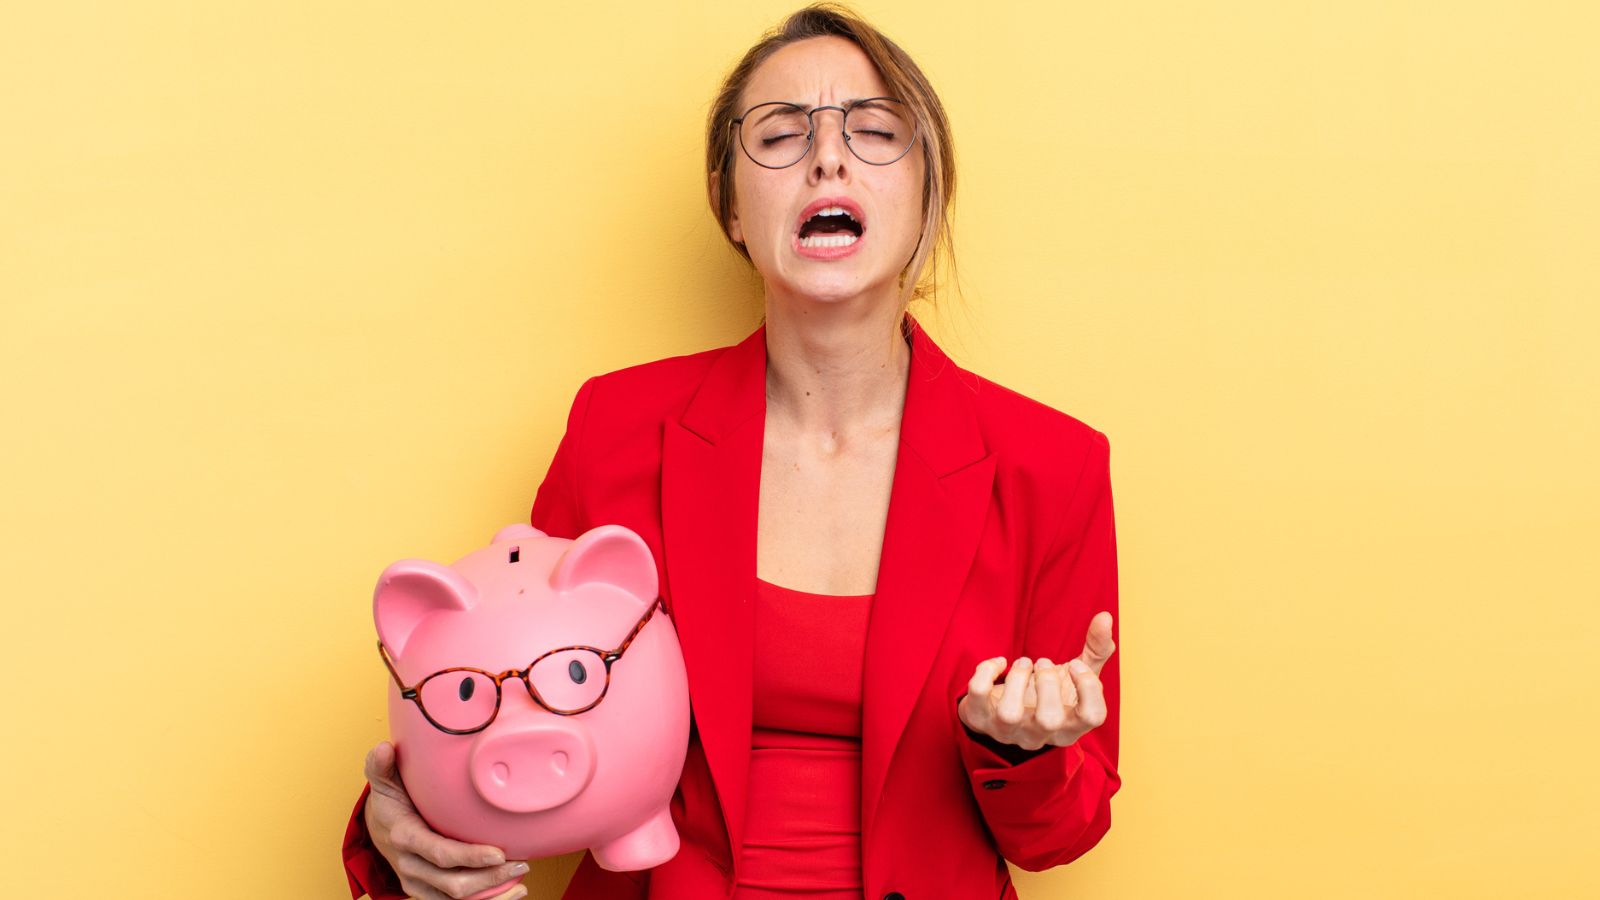 woman carrying piggy bank desperate upset